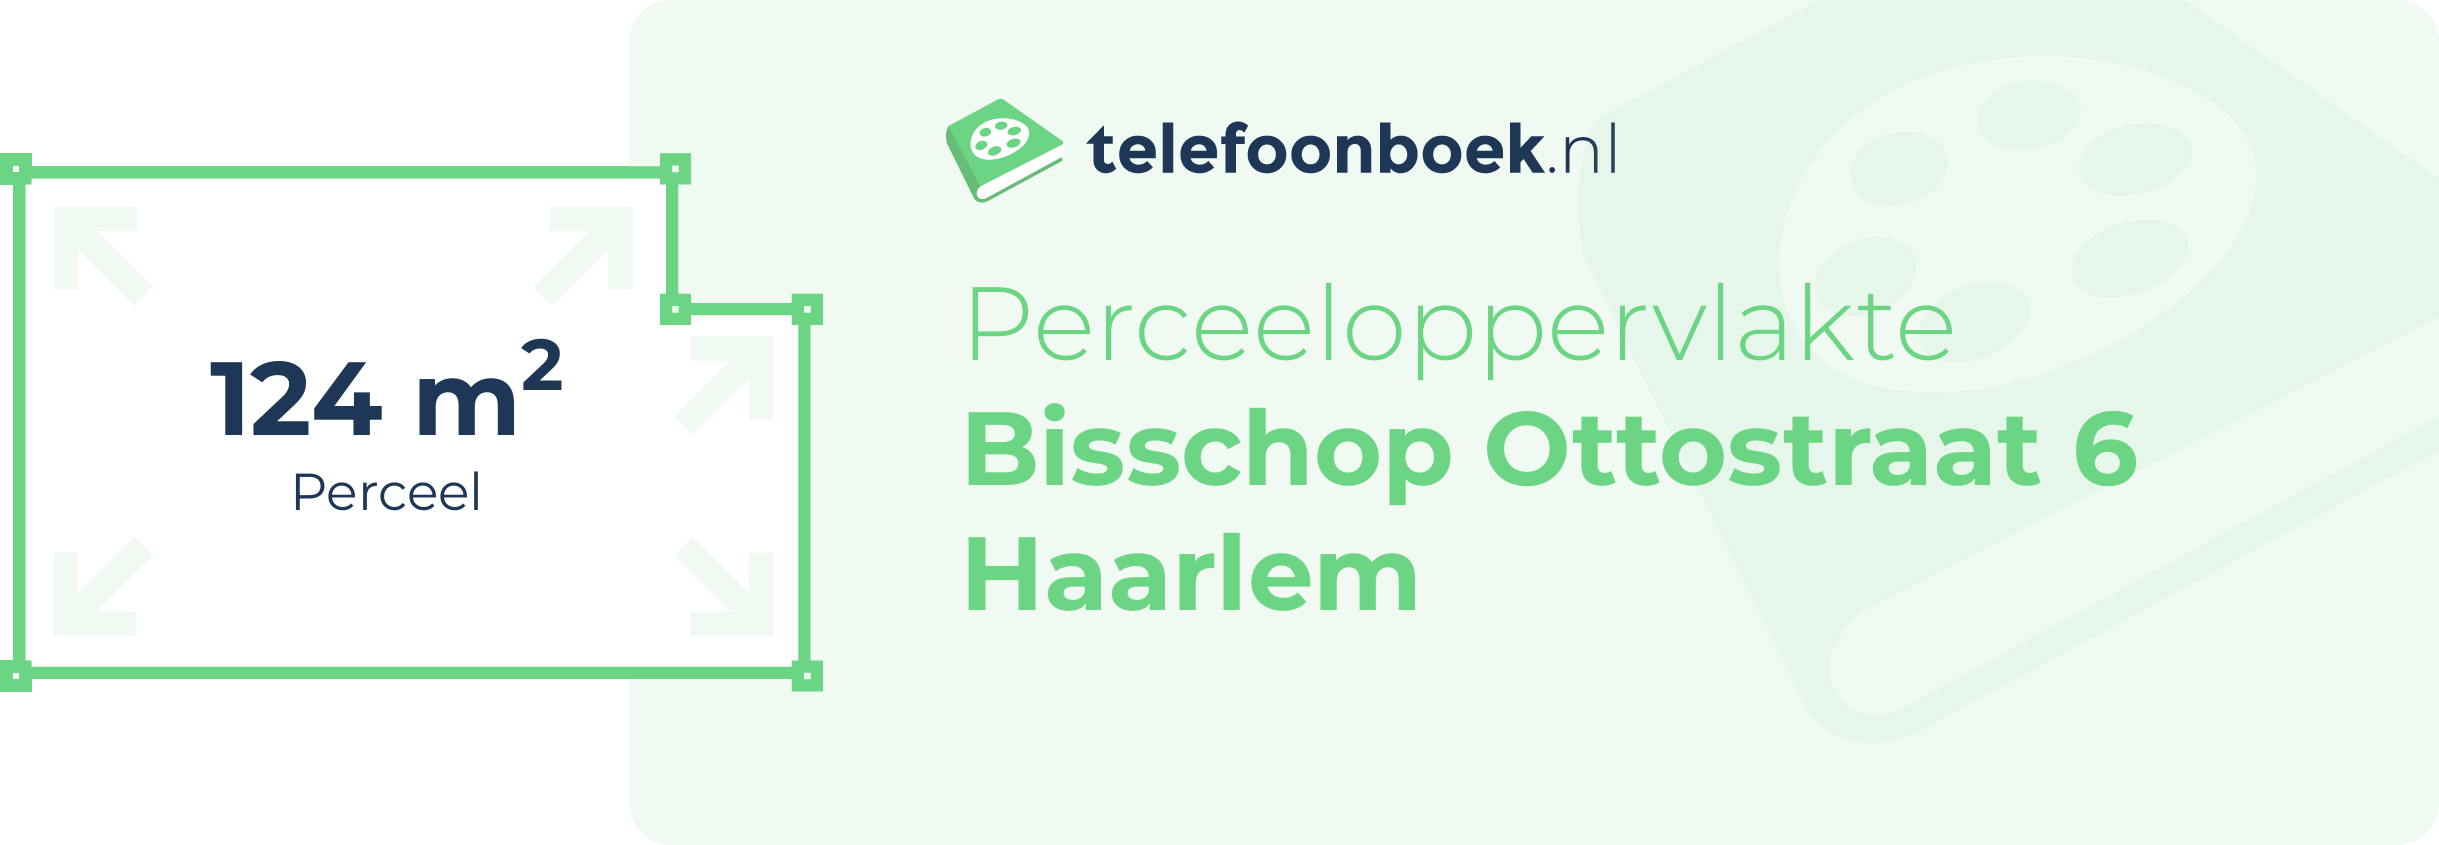 Perceeloppervlakte Bisschop Ottostraat 6 Haarlem